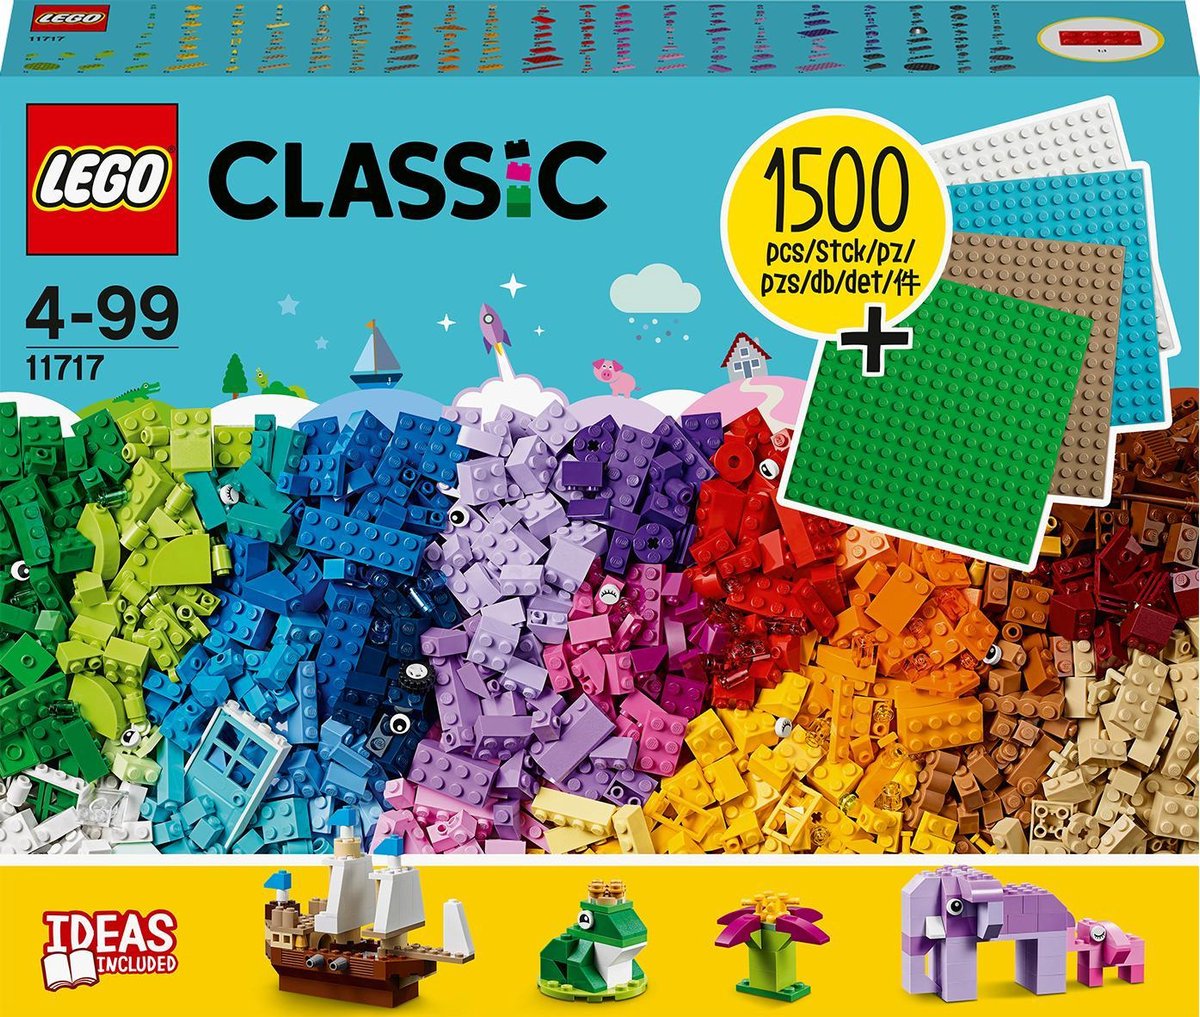 LEGO Classic 11020 Construire Ensemble, Boîte de Briques pour